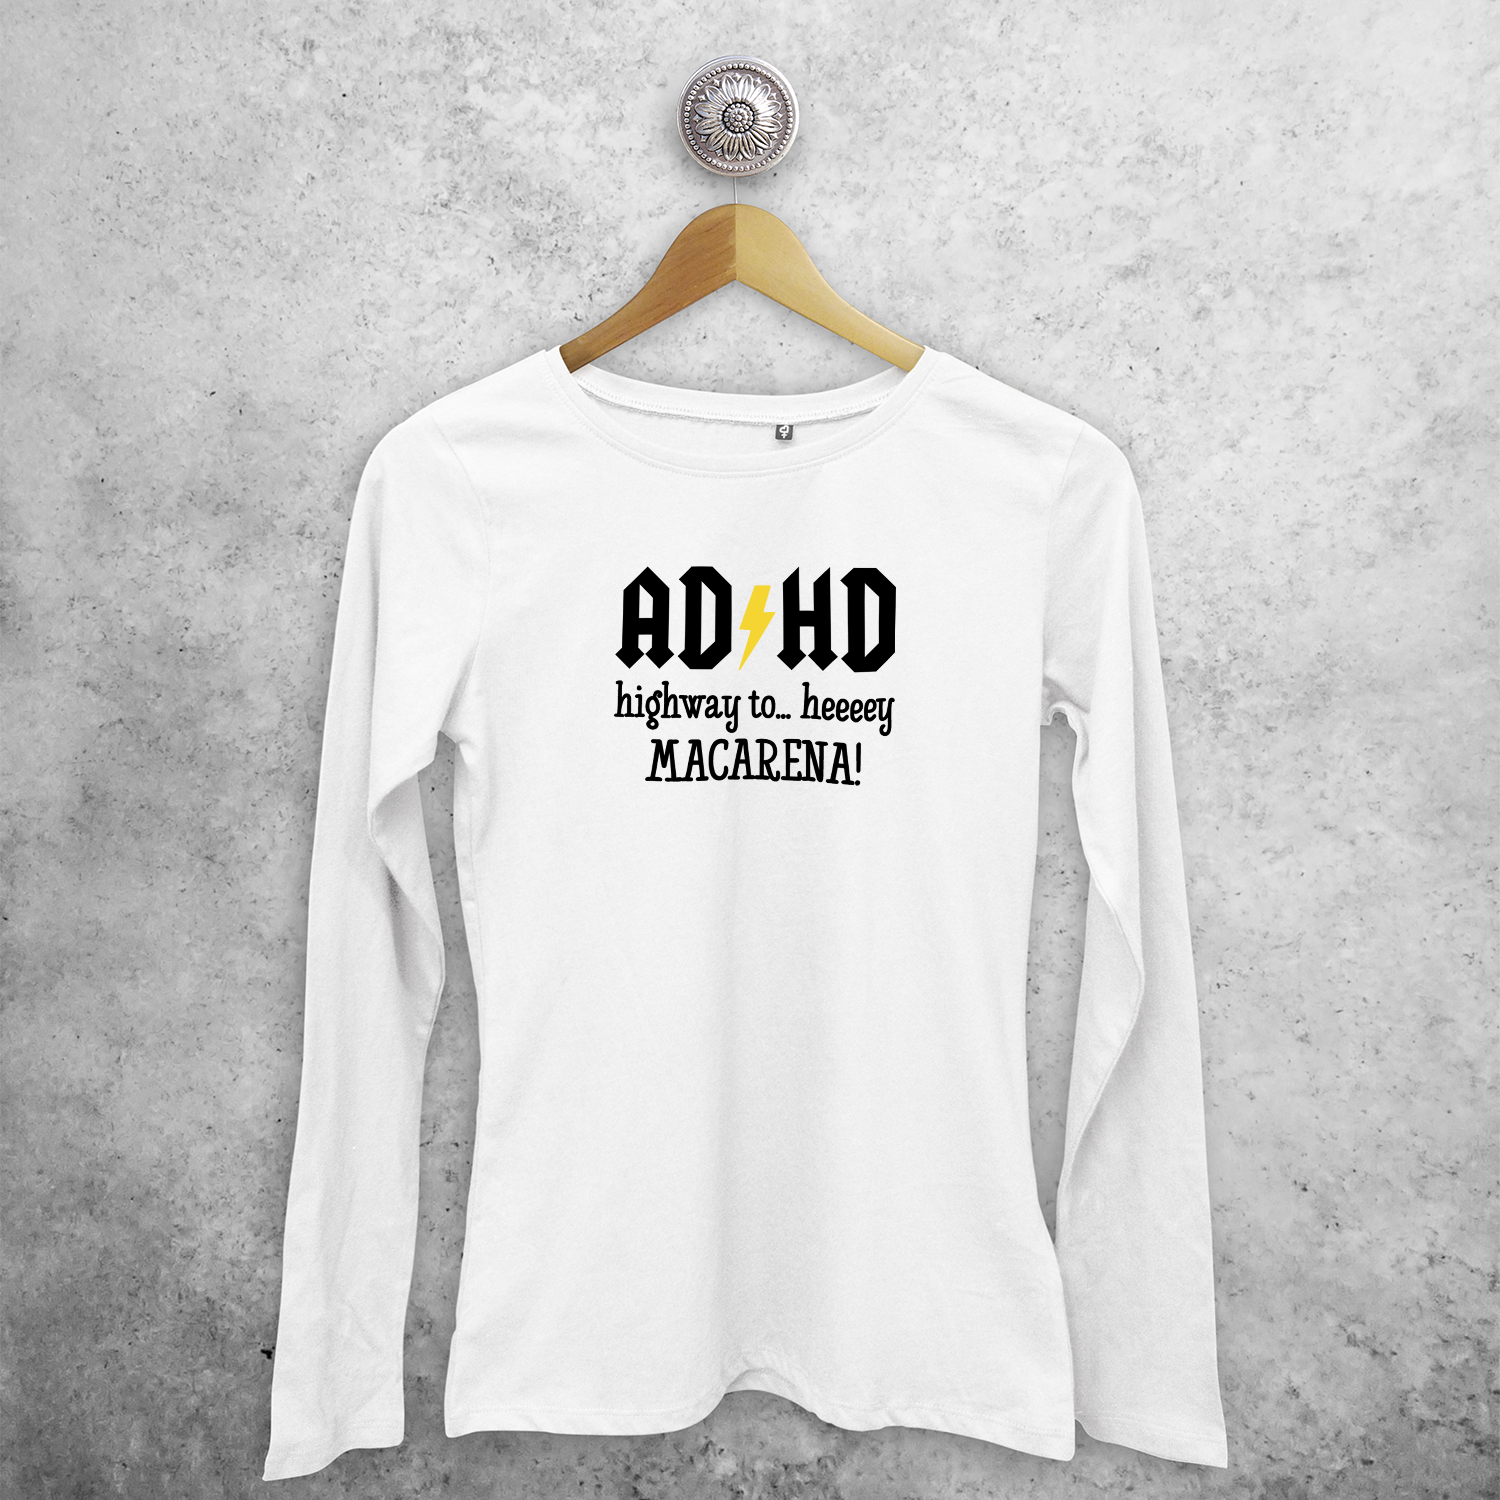 'ADHD - Highway to… heeeey MACARENA!' adult longsleeve shirt